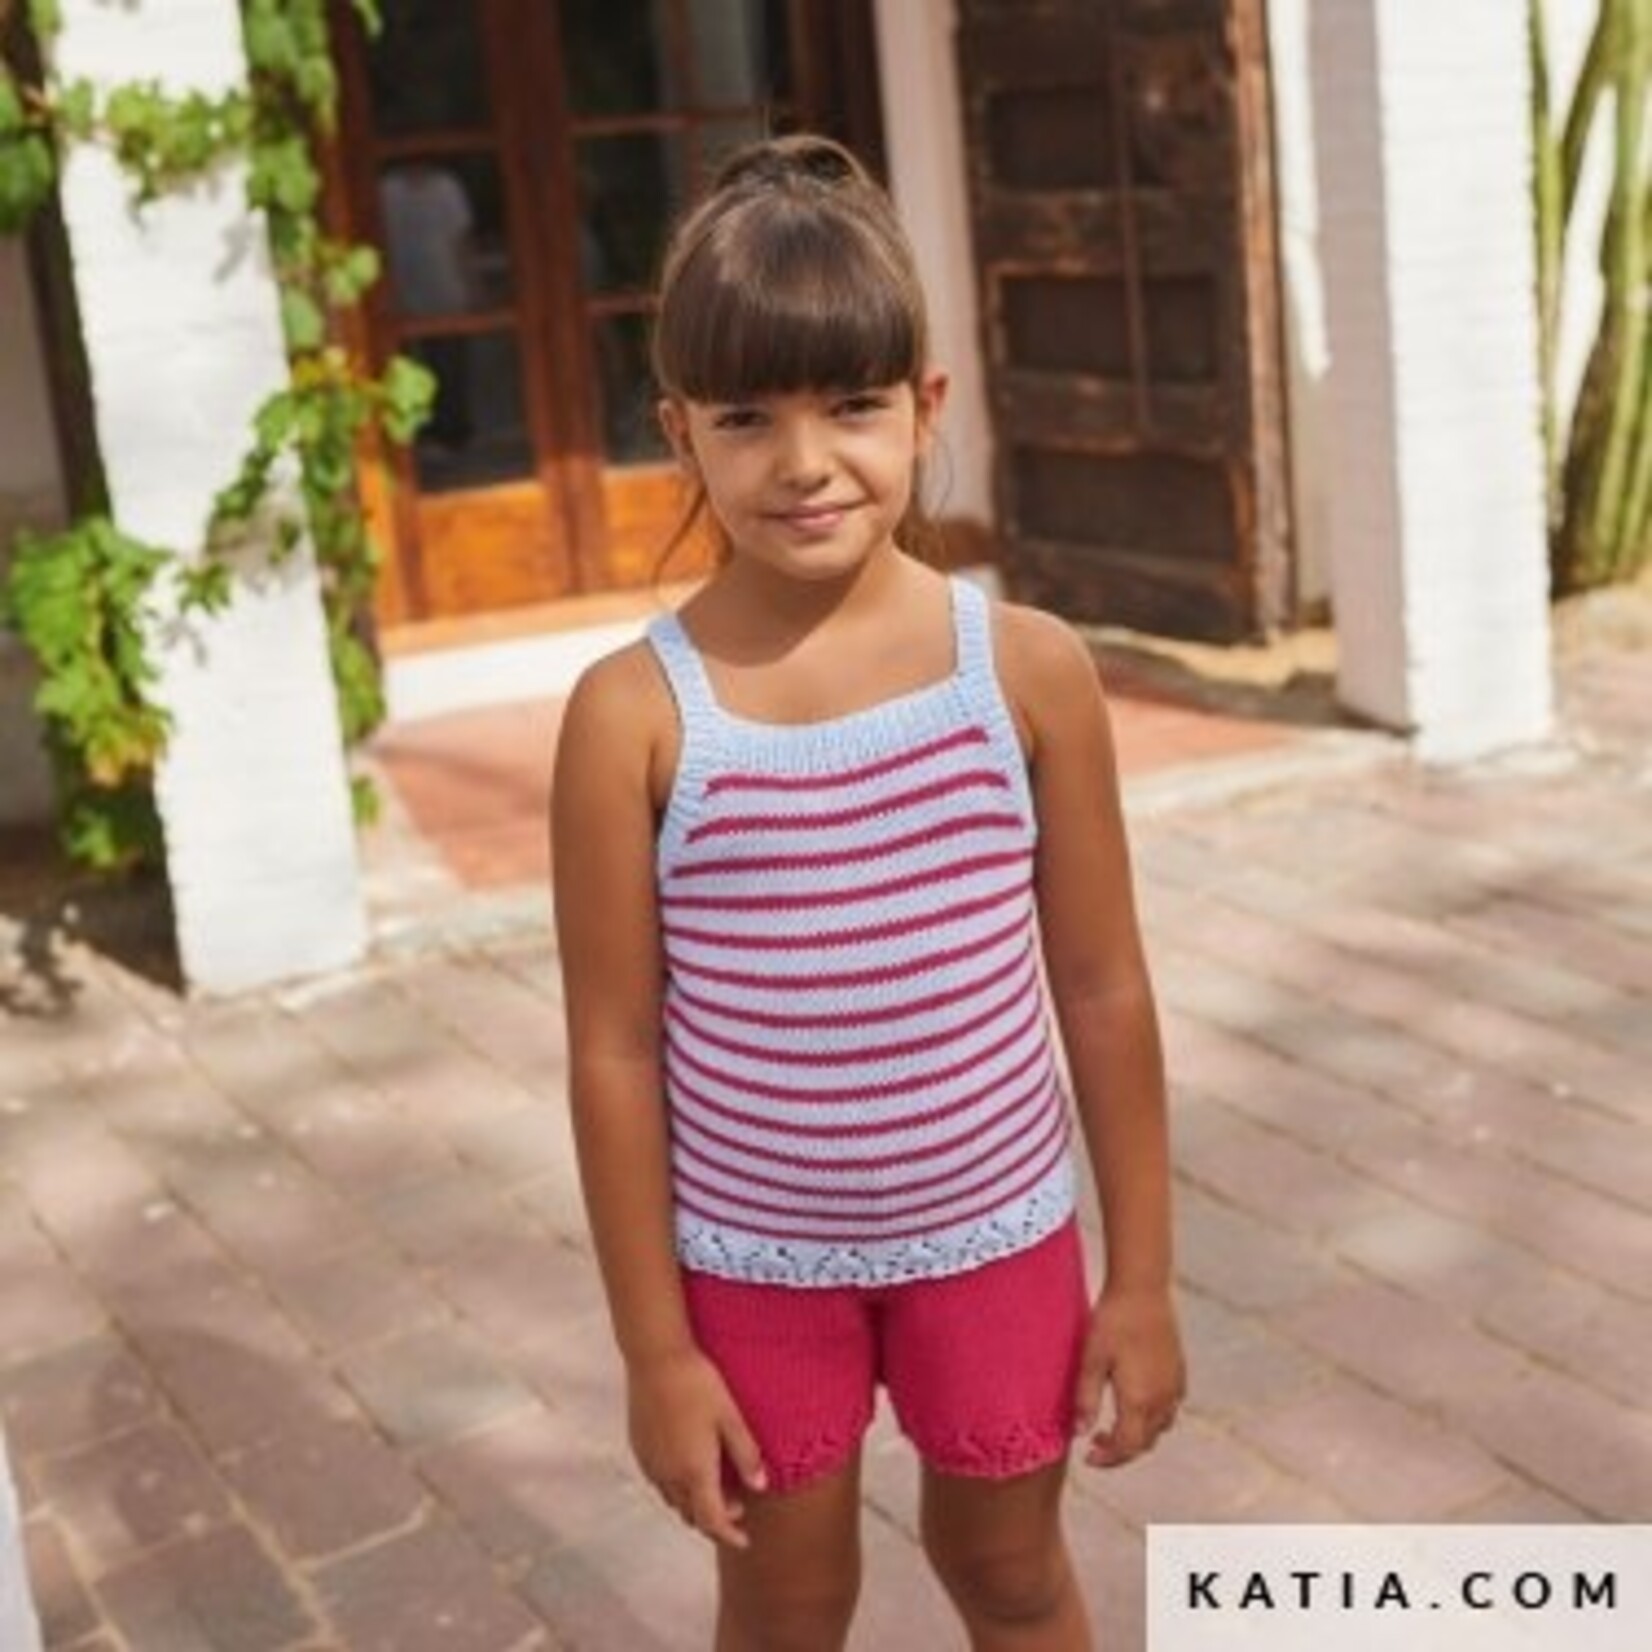 Katia Summer Comfort 83 Telegrijs